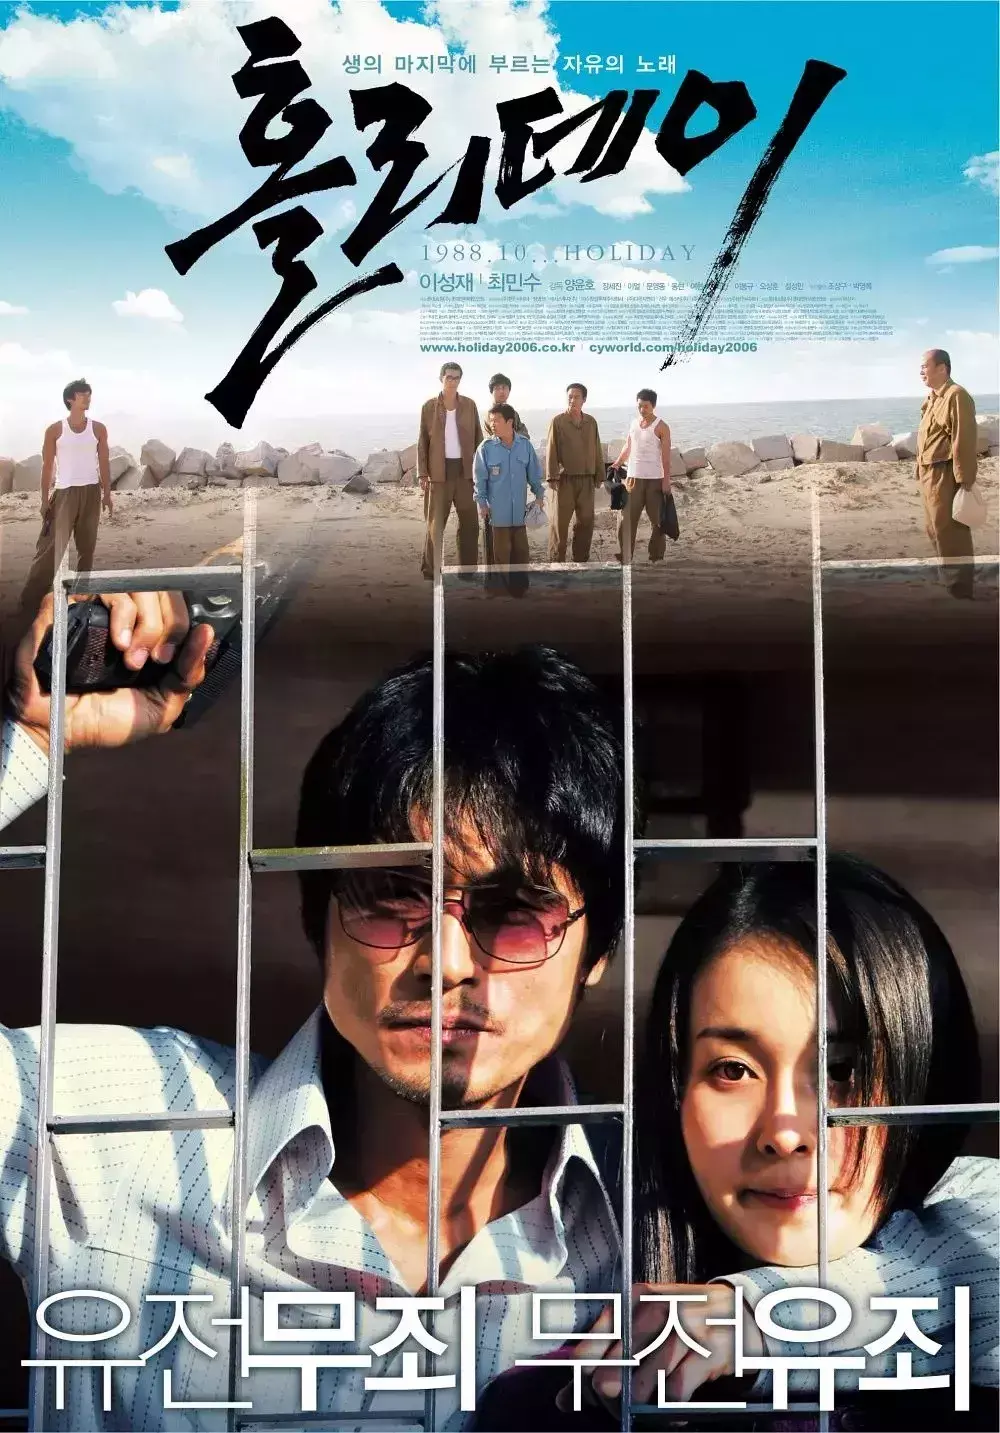 电影《越狱》的灵感来源于韩国1988年的一起实际事件（莲莲的设计灵感来源于哪里）